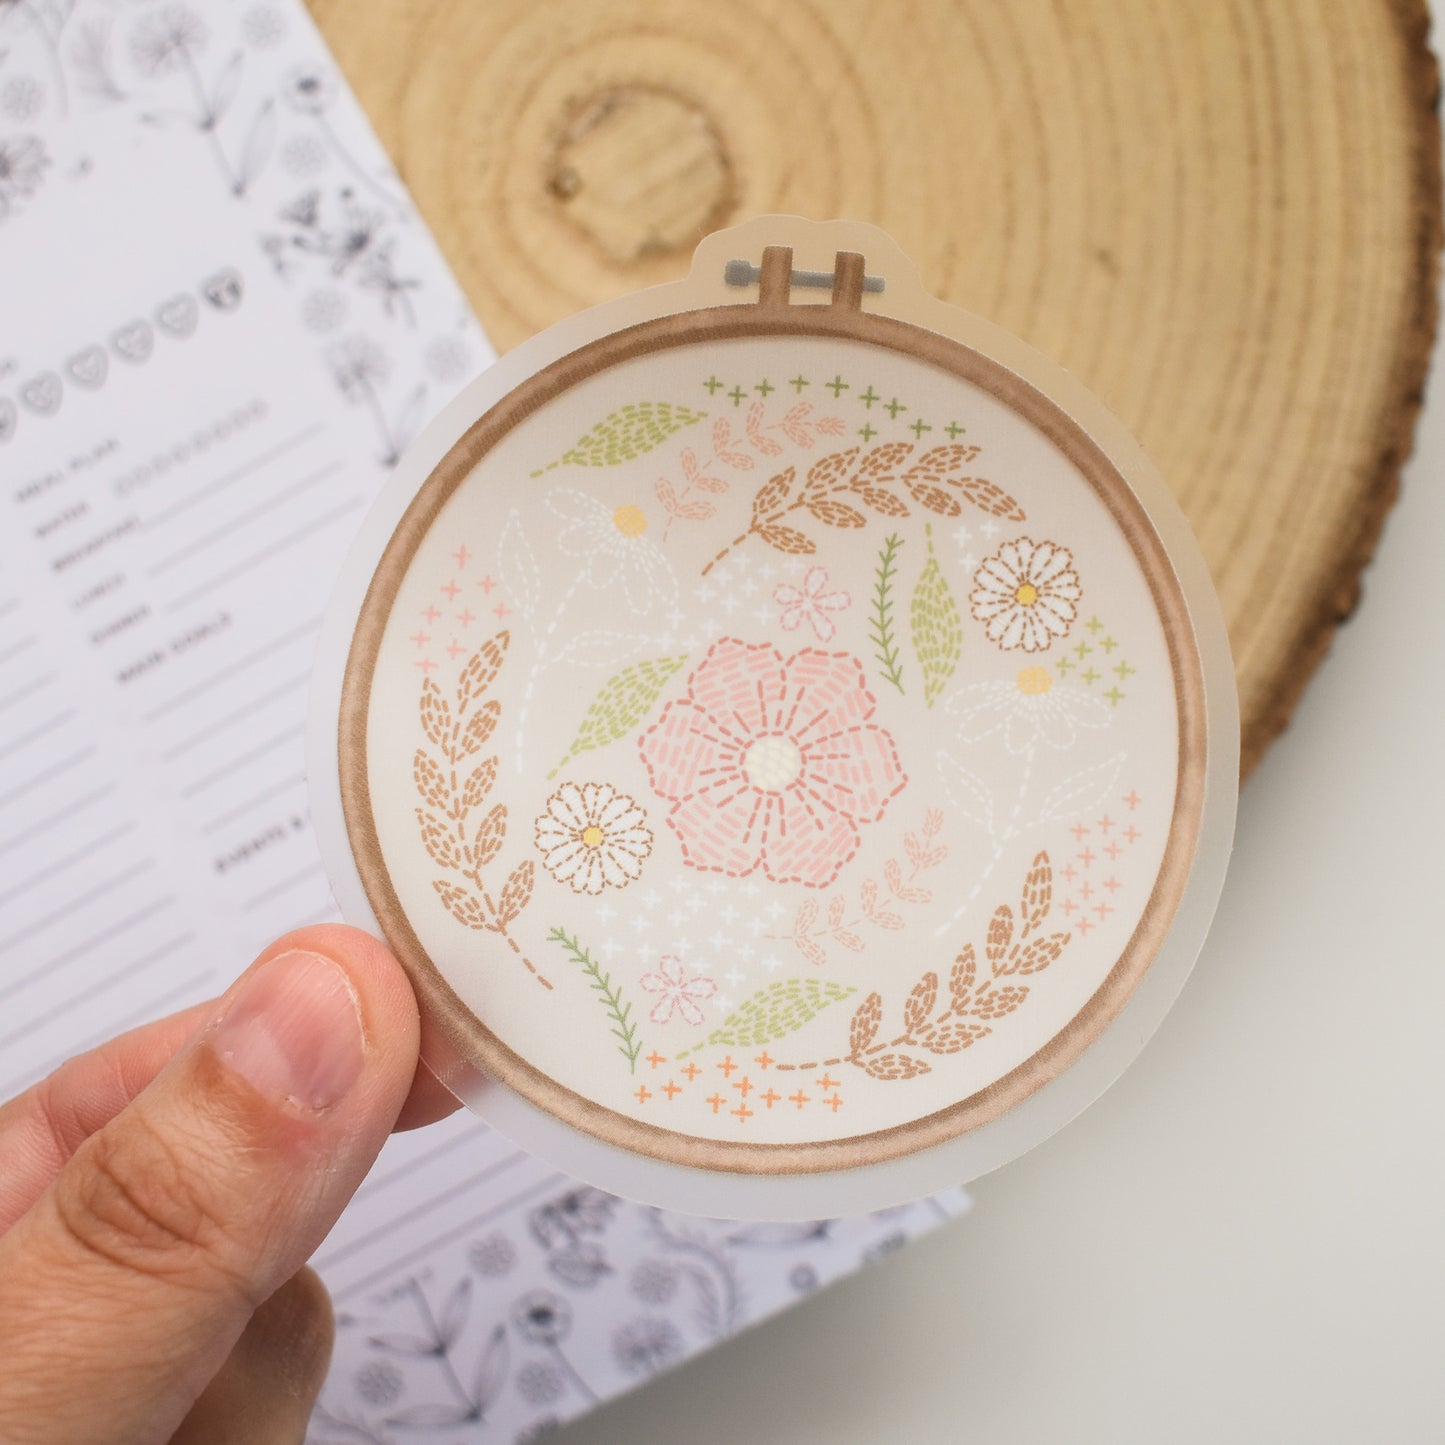 Clear Embroidery Hoop Die Cut Sticker